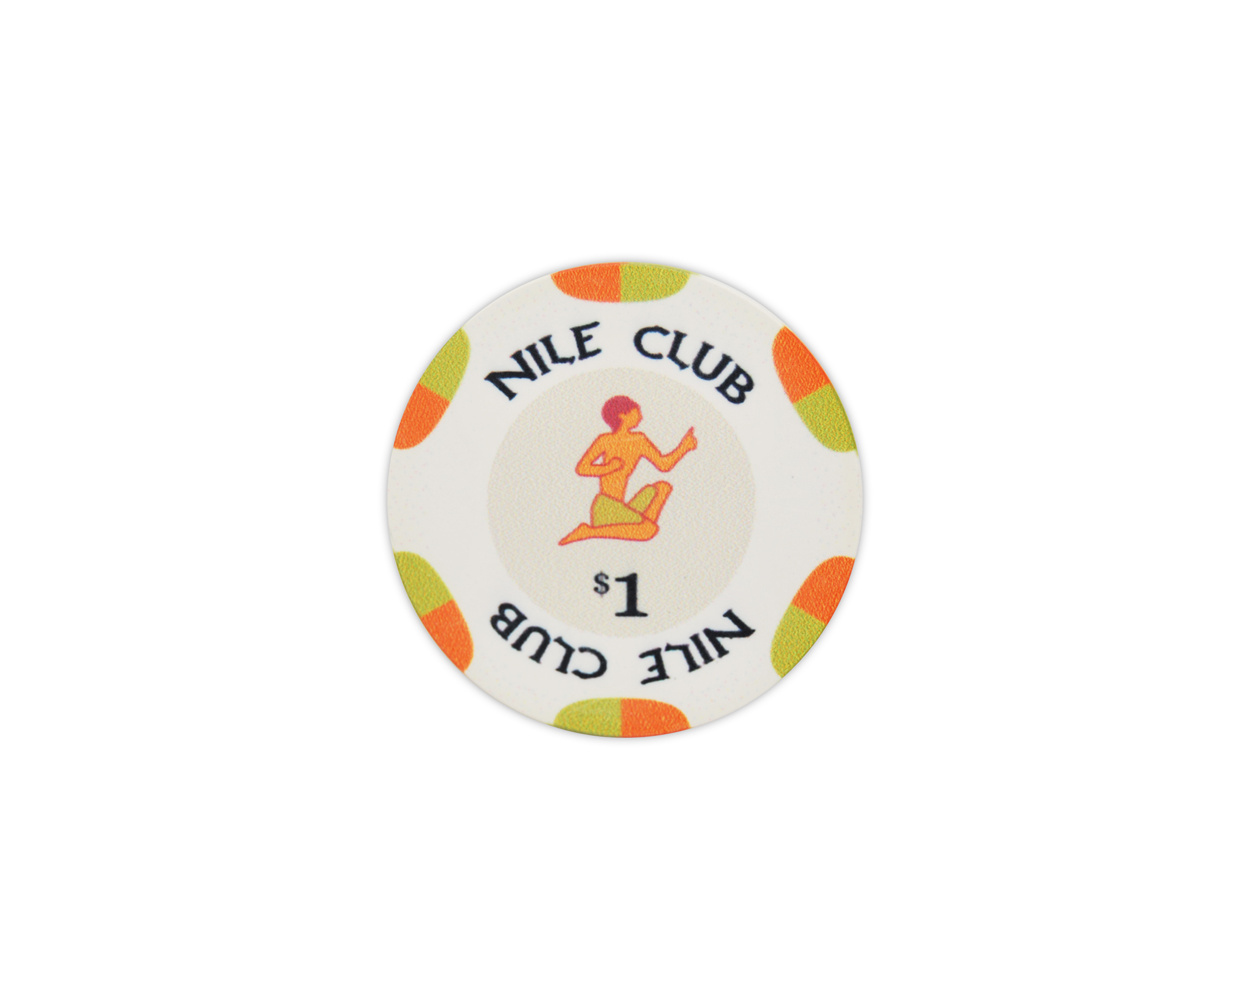 Nile Club Ceramic Poker Chips - (Roll of 25) PokerChips.com